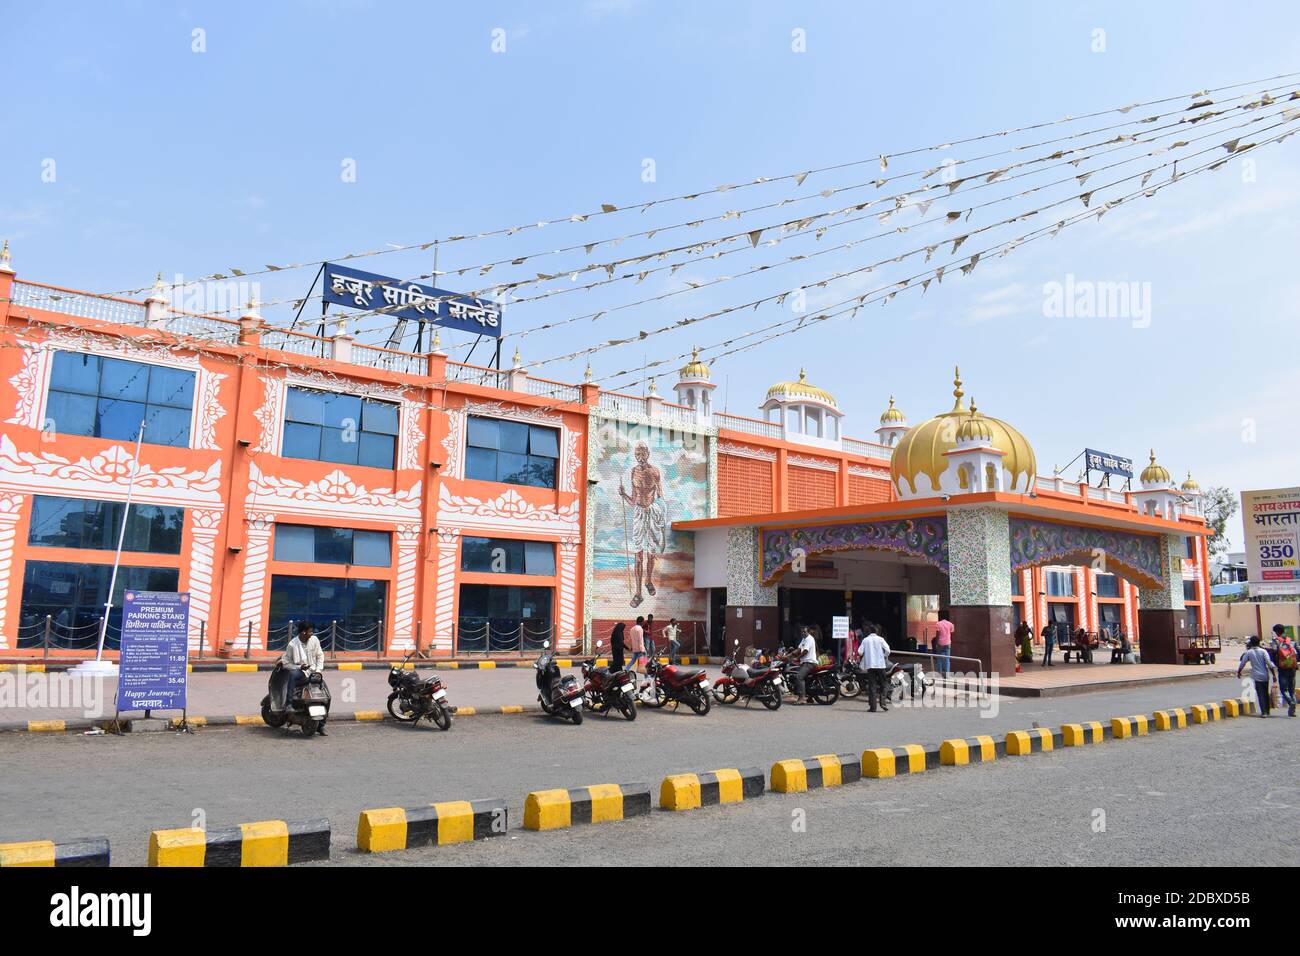 Hazur Sahib Nanded ist ein Bahnhof, der die Stadt Nanded im Bundesstaat Maharashtra, Indien, bedient. Stockfoto